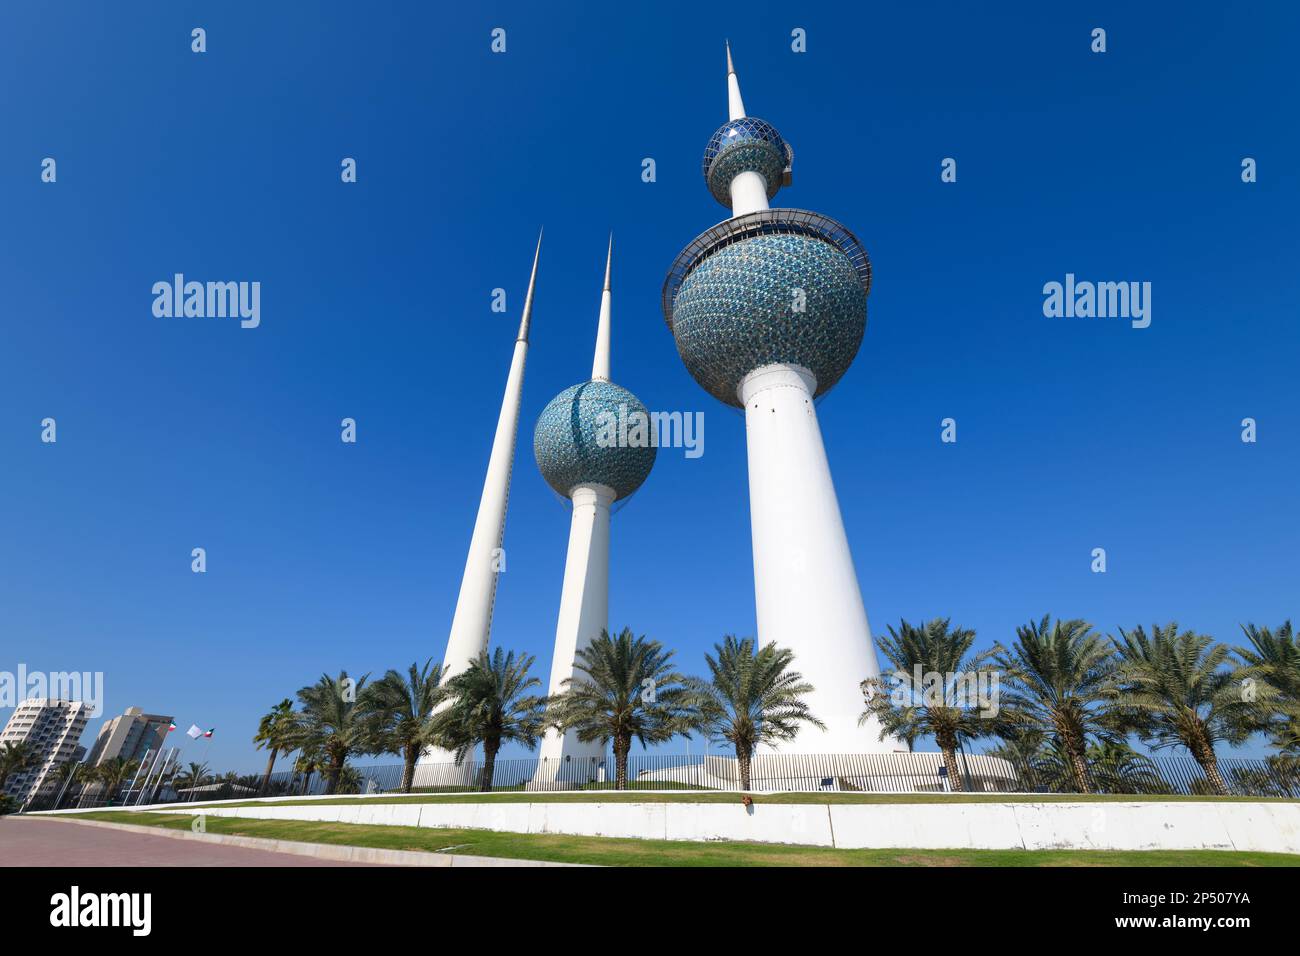 Kuwait Towers, auch bekannt als Kuwait Water Towers, wurde zu einem Wahrzeichen und Symbol des modernen Kuwait. Aus Stahlbeton und vorgespanntem Beton. Stockfoto